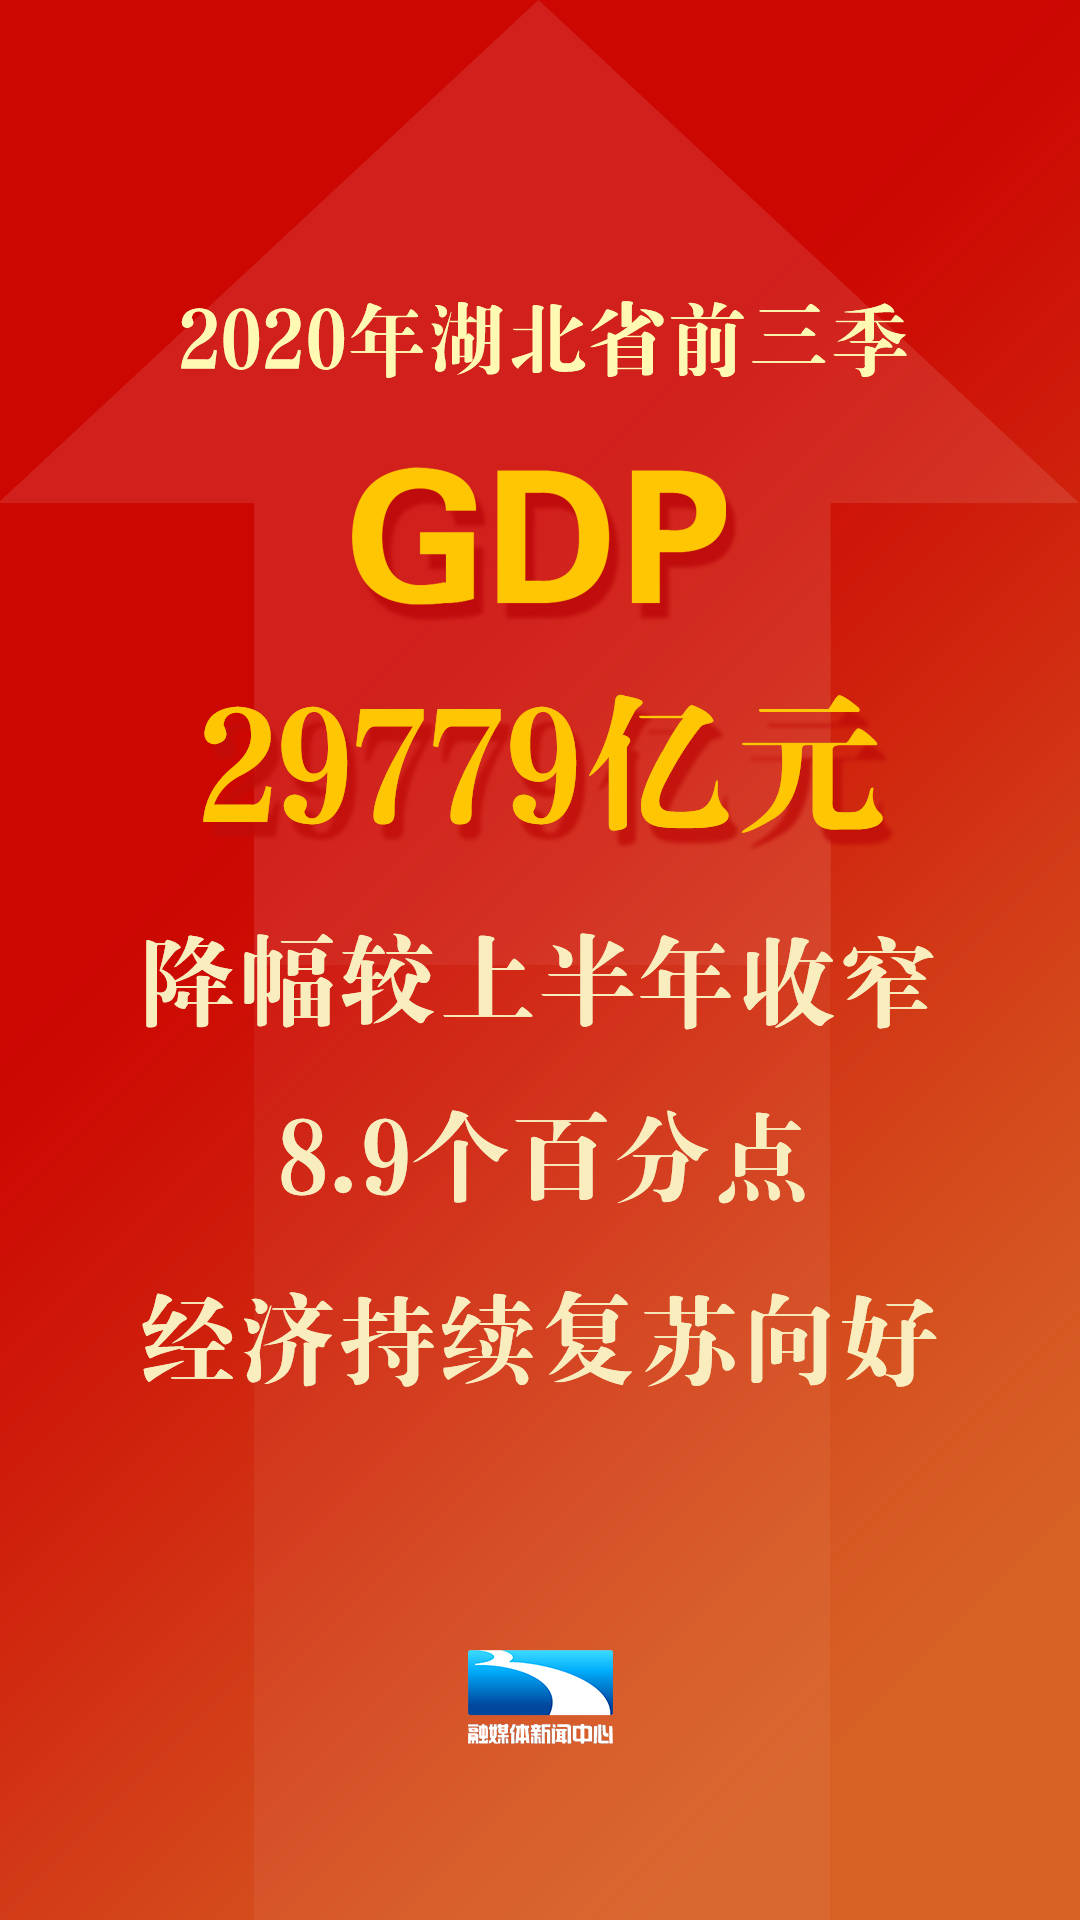 2020年上半年仙桃gdp_廣東省上半年GDP增幅 深圳領先汕尾墊底